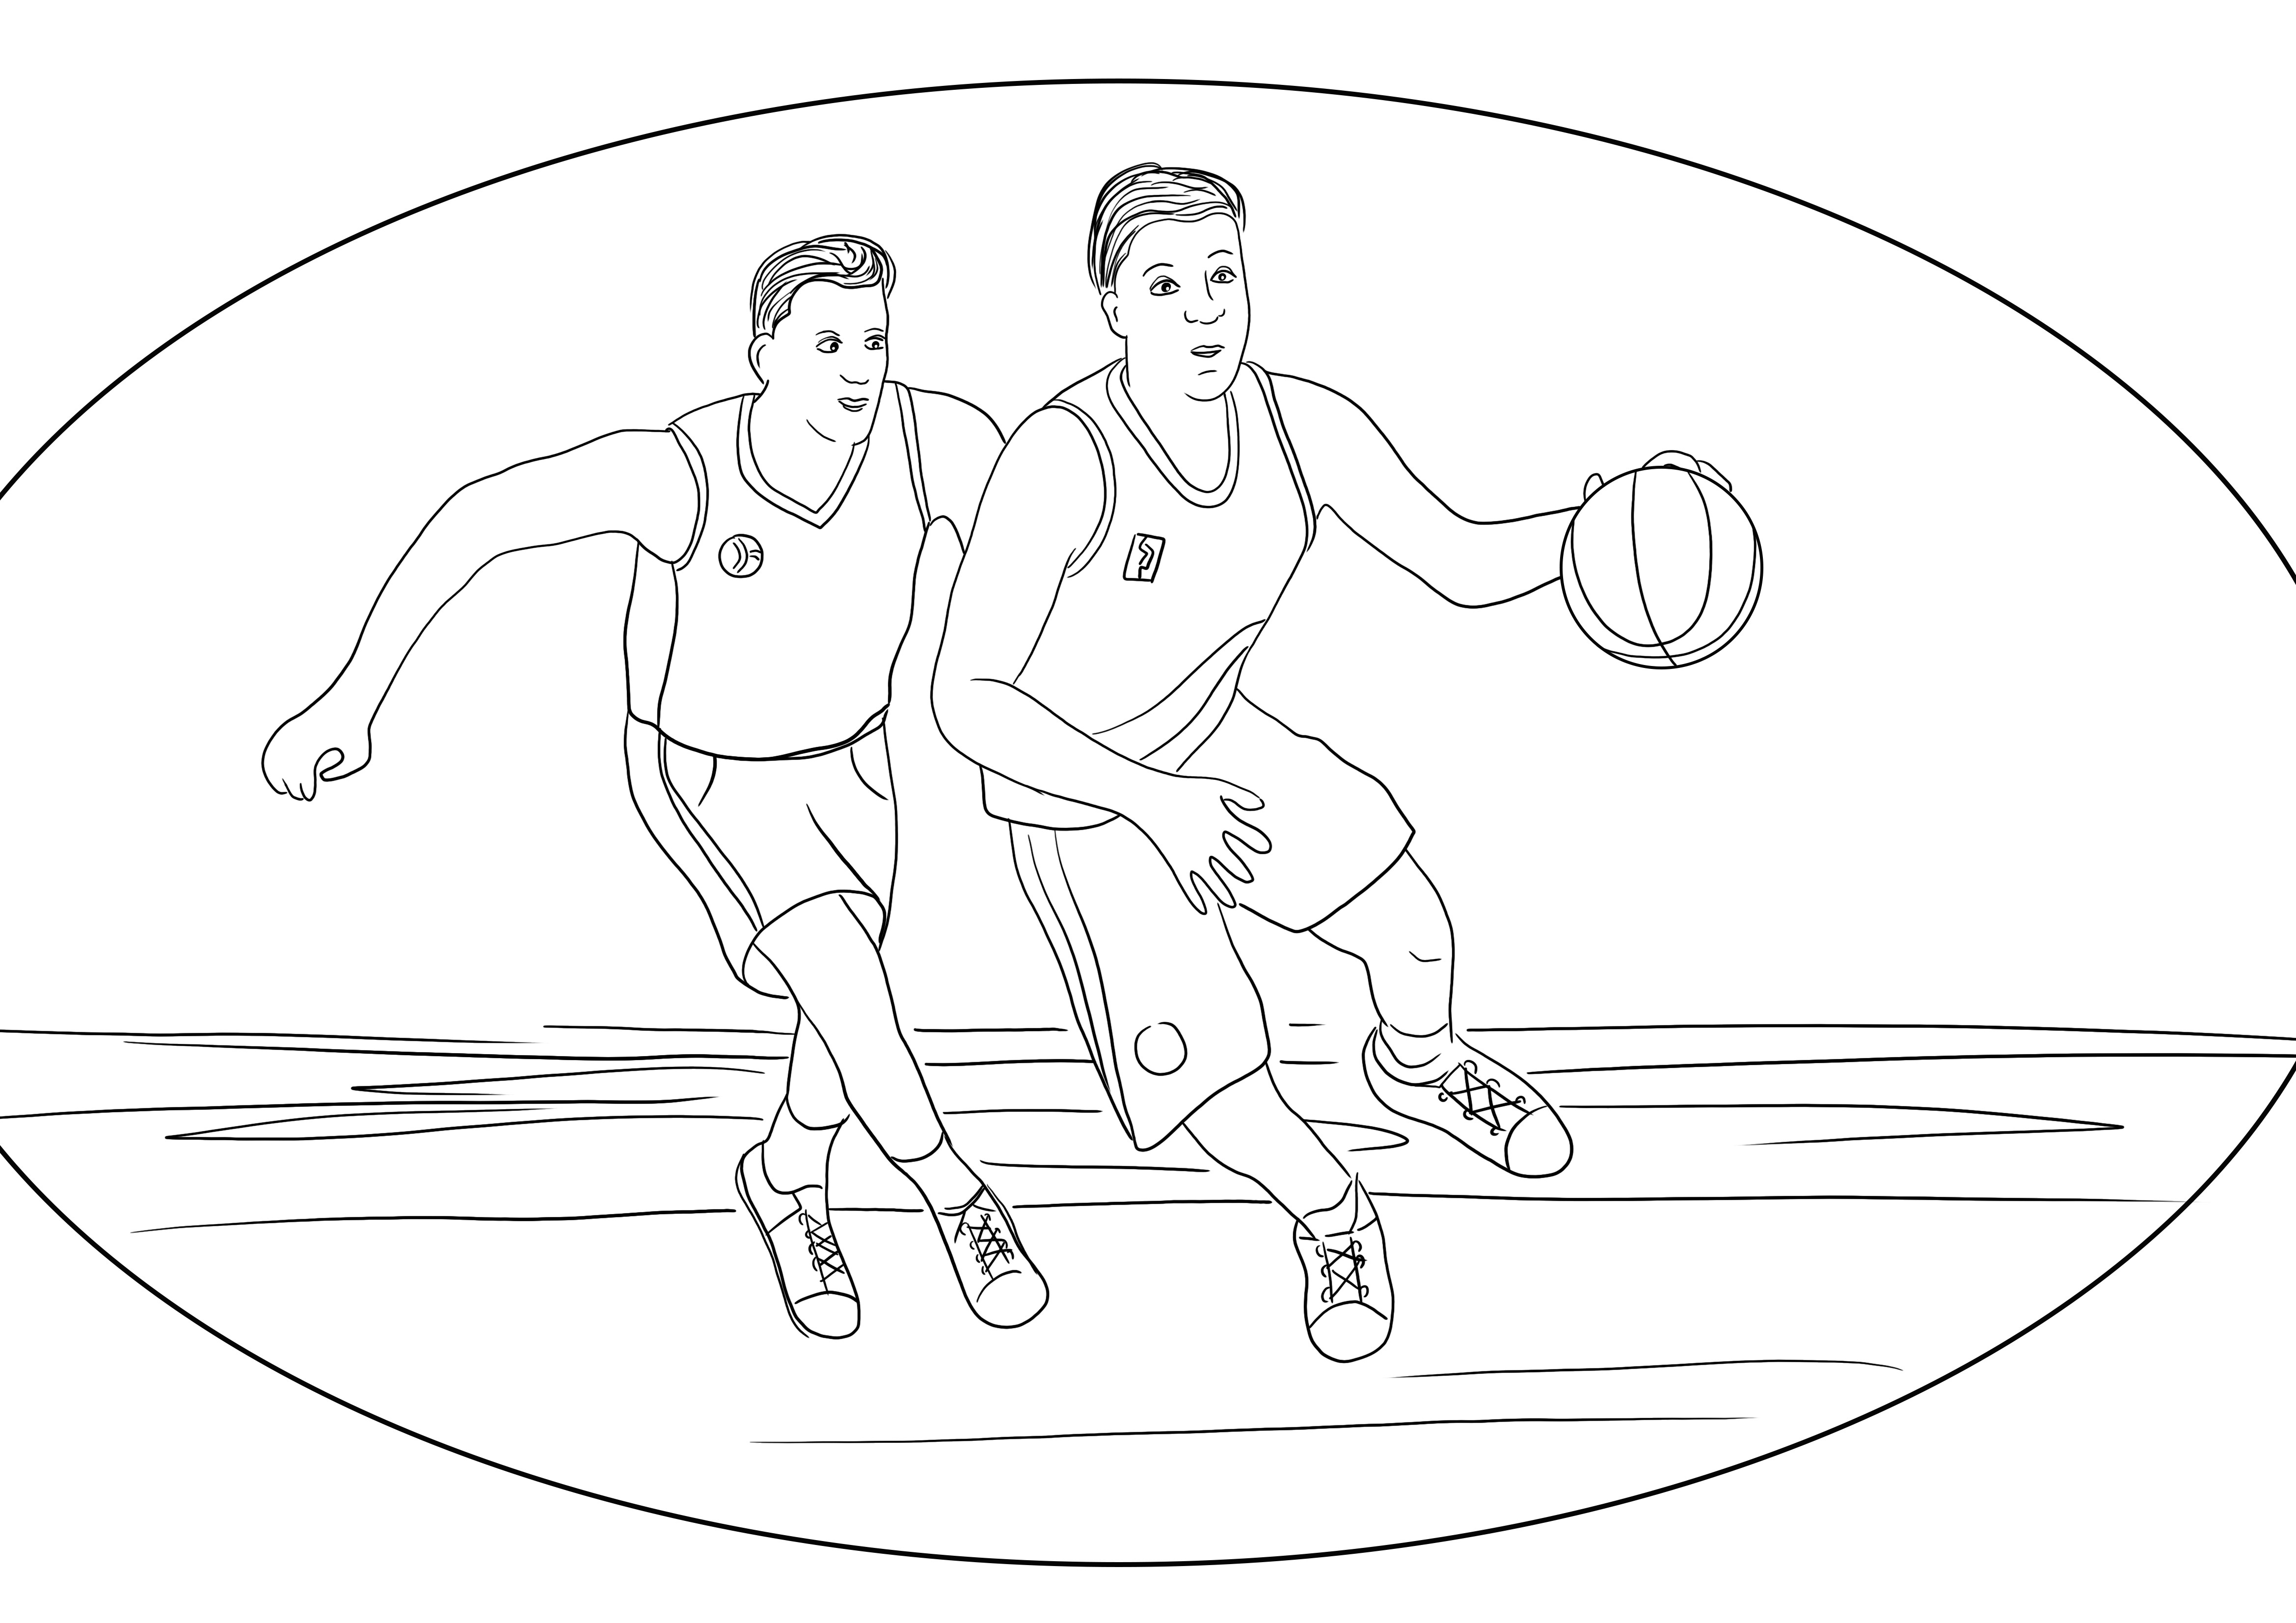 Gratis downloadpagina van een basketbalspel dat gemakkelijk door kinderen kan worden ingekleurd kleurplaat